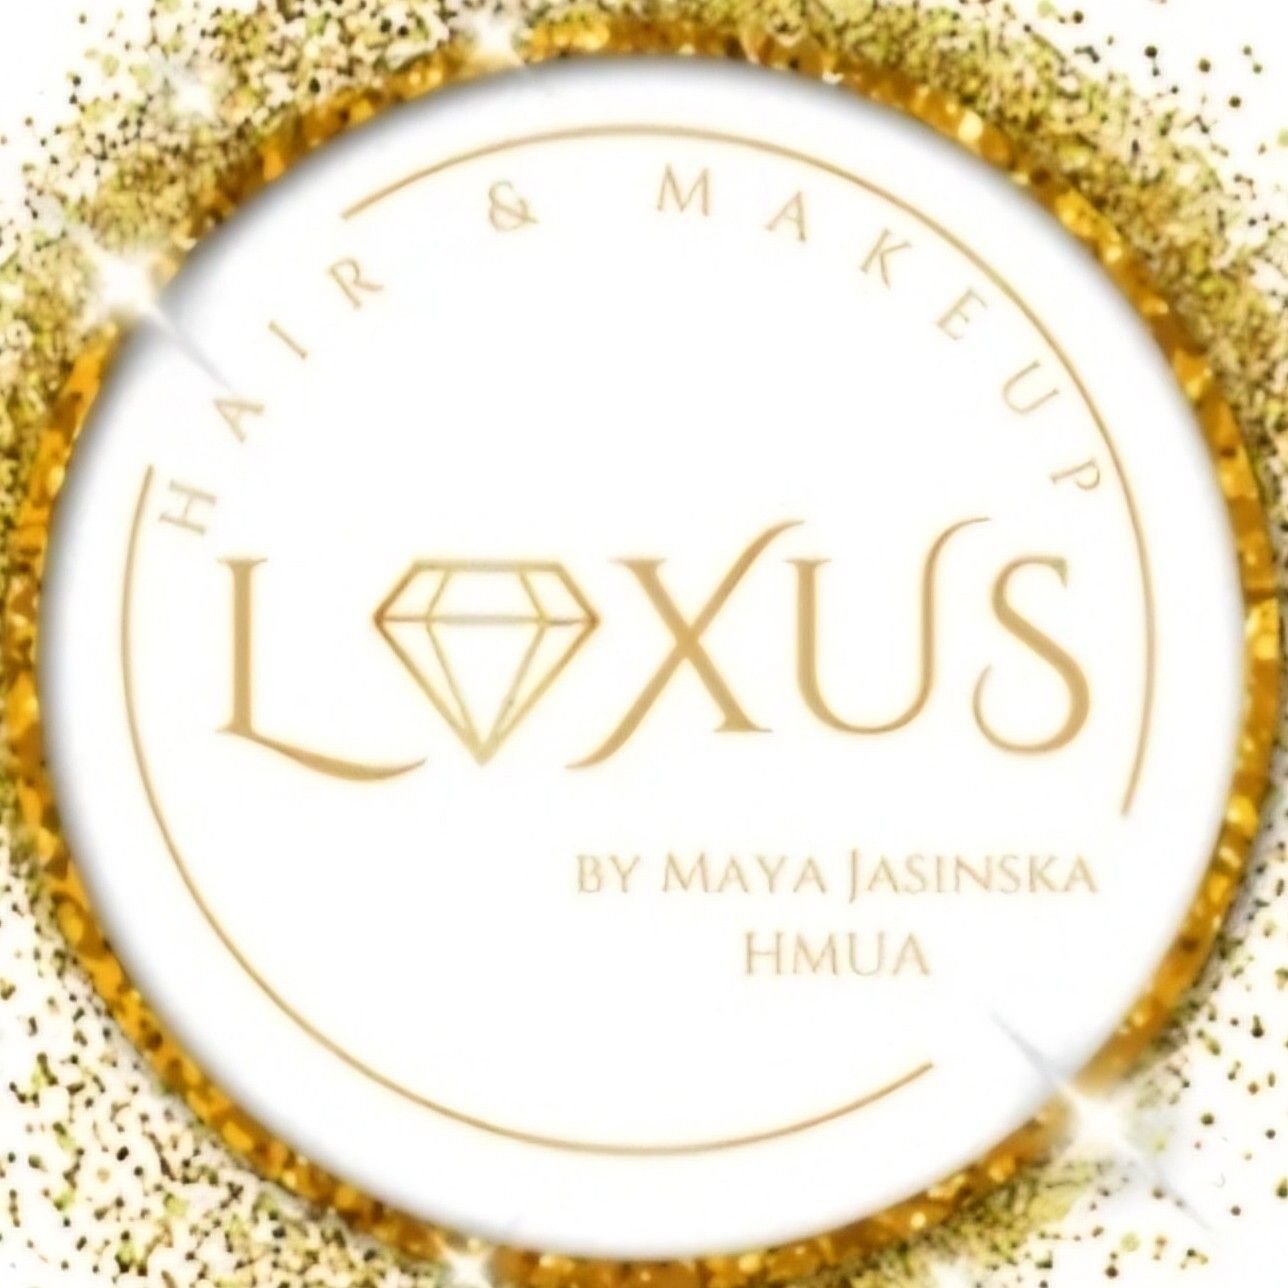 Loxus Hair And Make-up By Maya Jasinska HMUA, 14 Heol Pant Y Rhyn, CF14 7DF, Cardiff